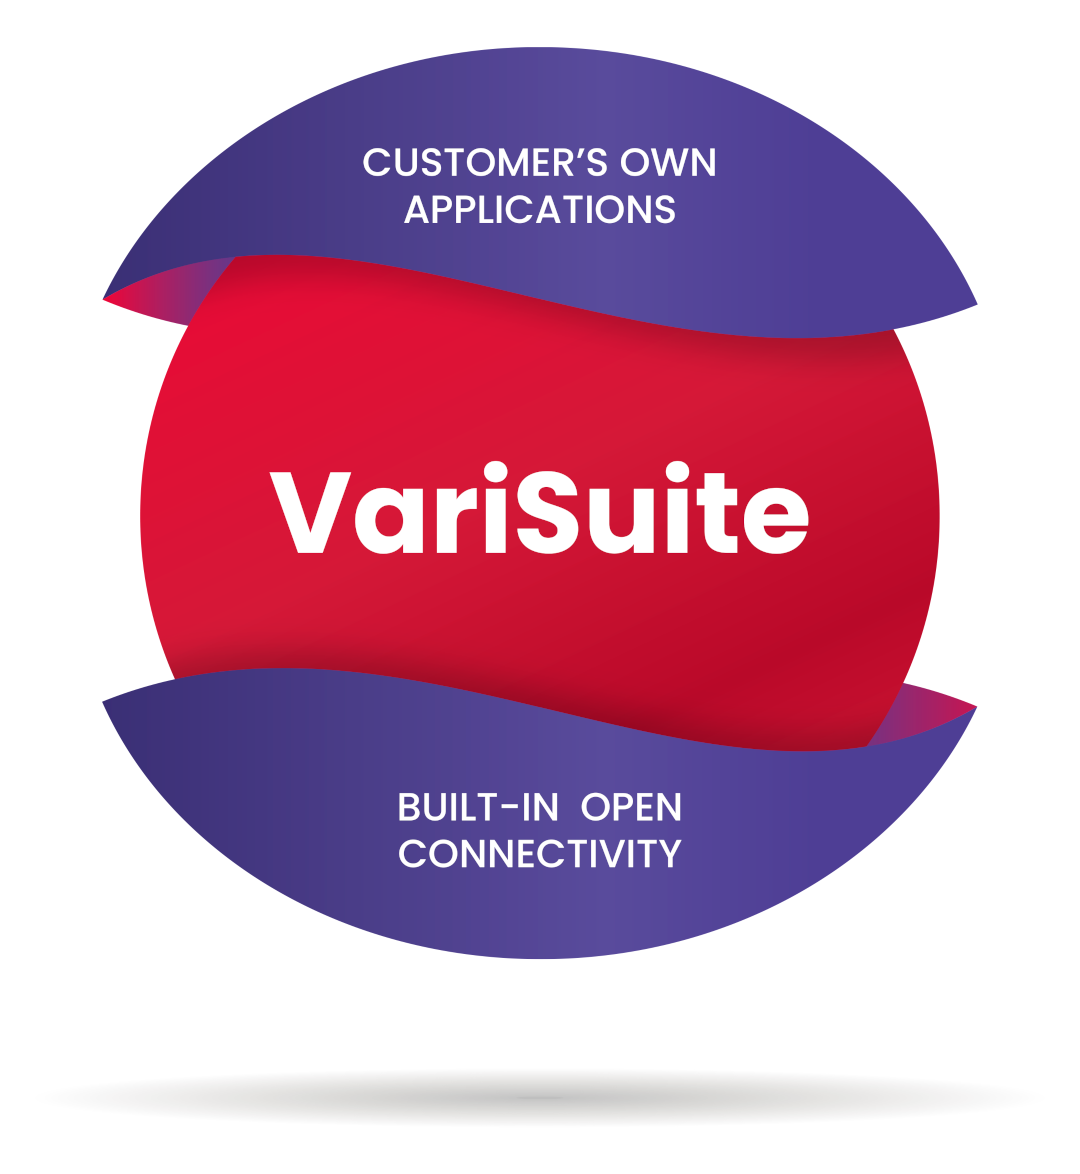 VariSuite-ball-for-website